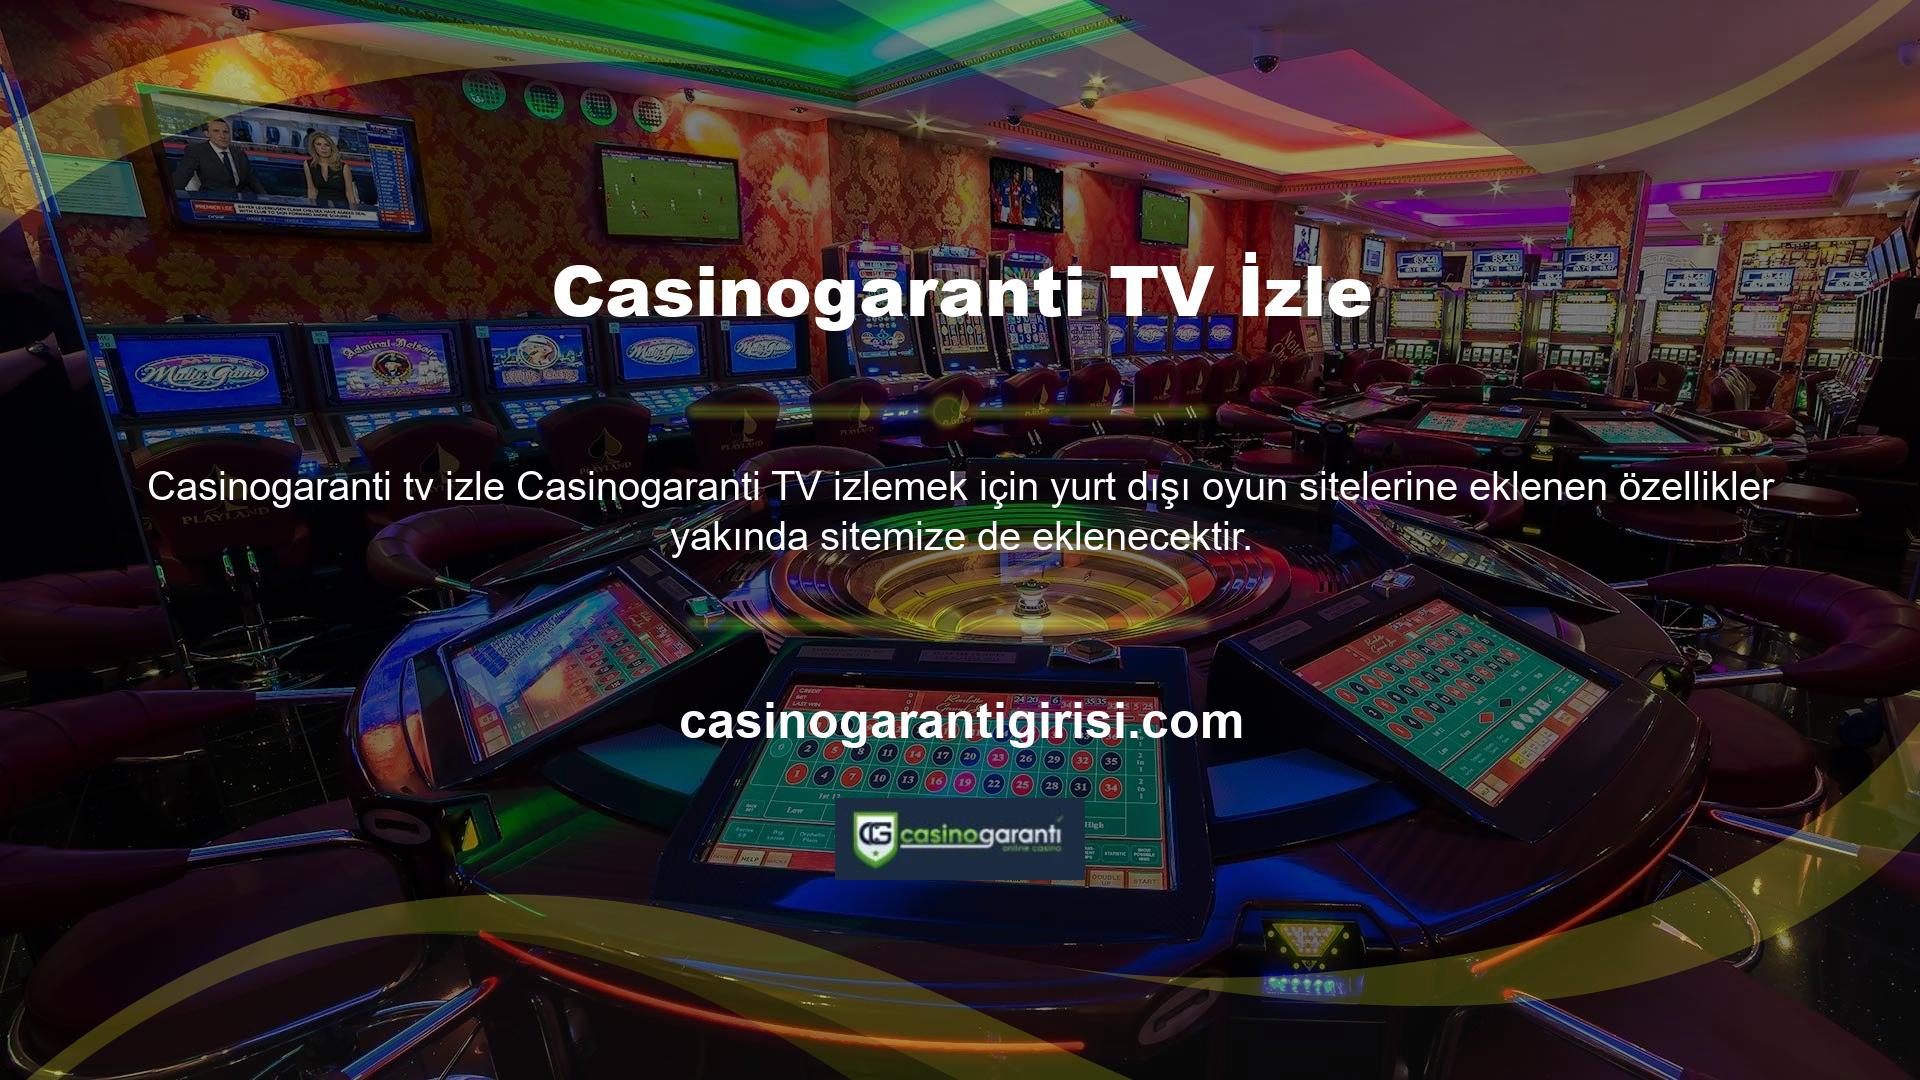 Ayrıca Casinogaranti aktif olarak televizyona alternatifler sunuyor